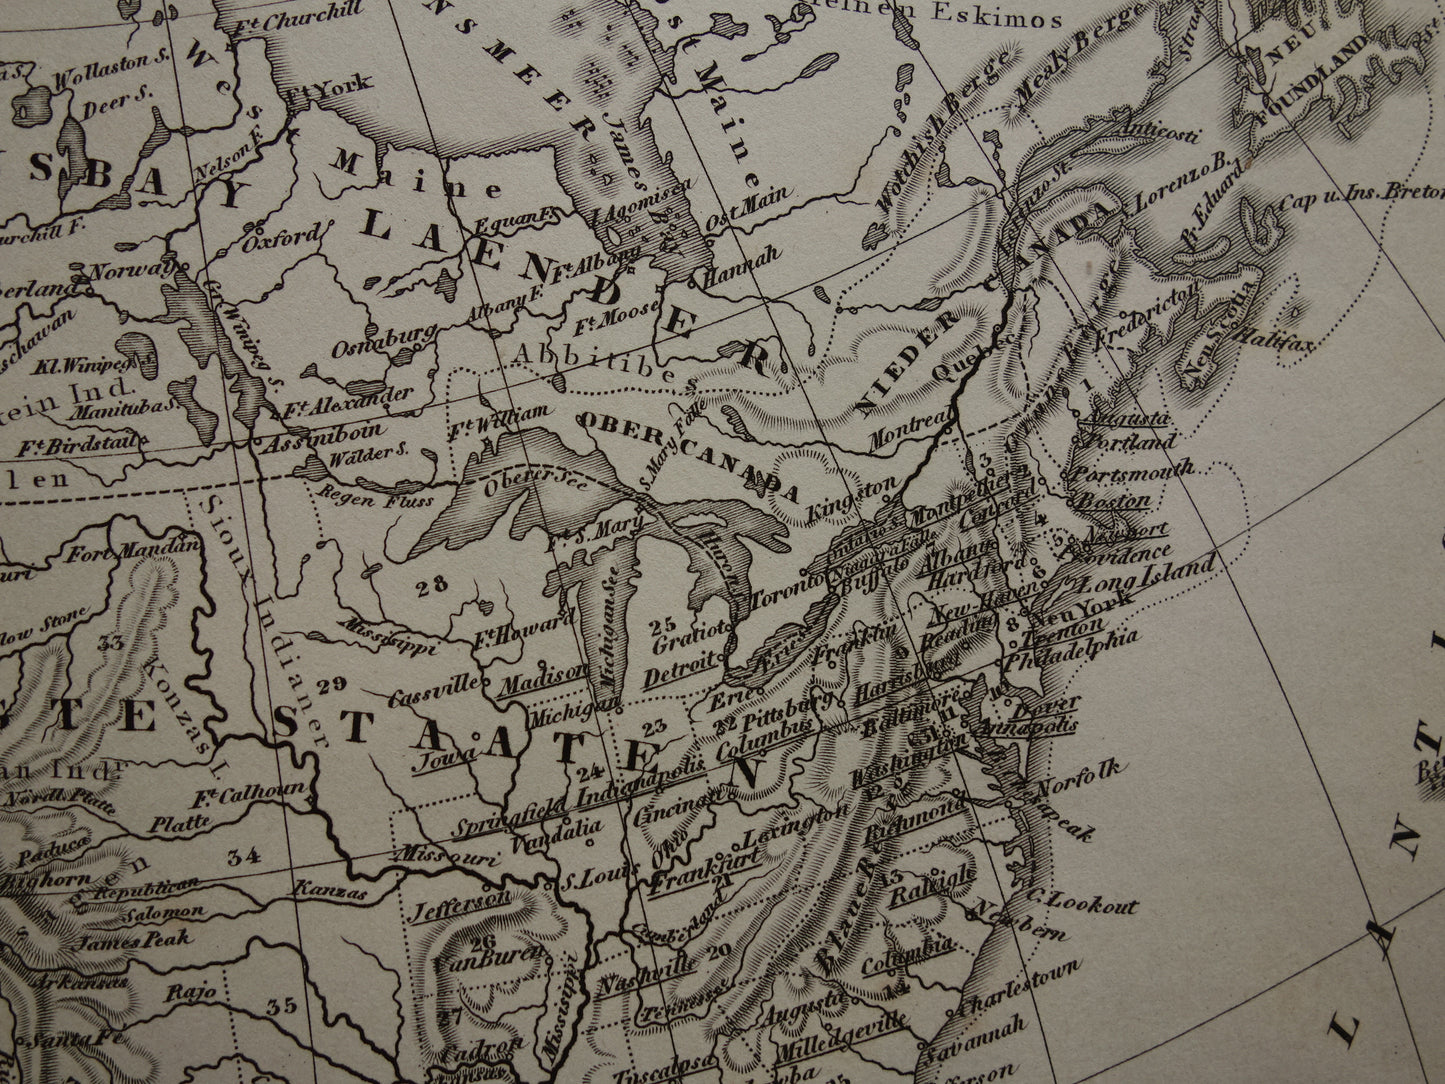 NOORD AMERIKA antieke kaart 170+ jaar oude landkaart van continent uit 1849 - originele vintage historische kaarten